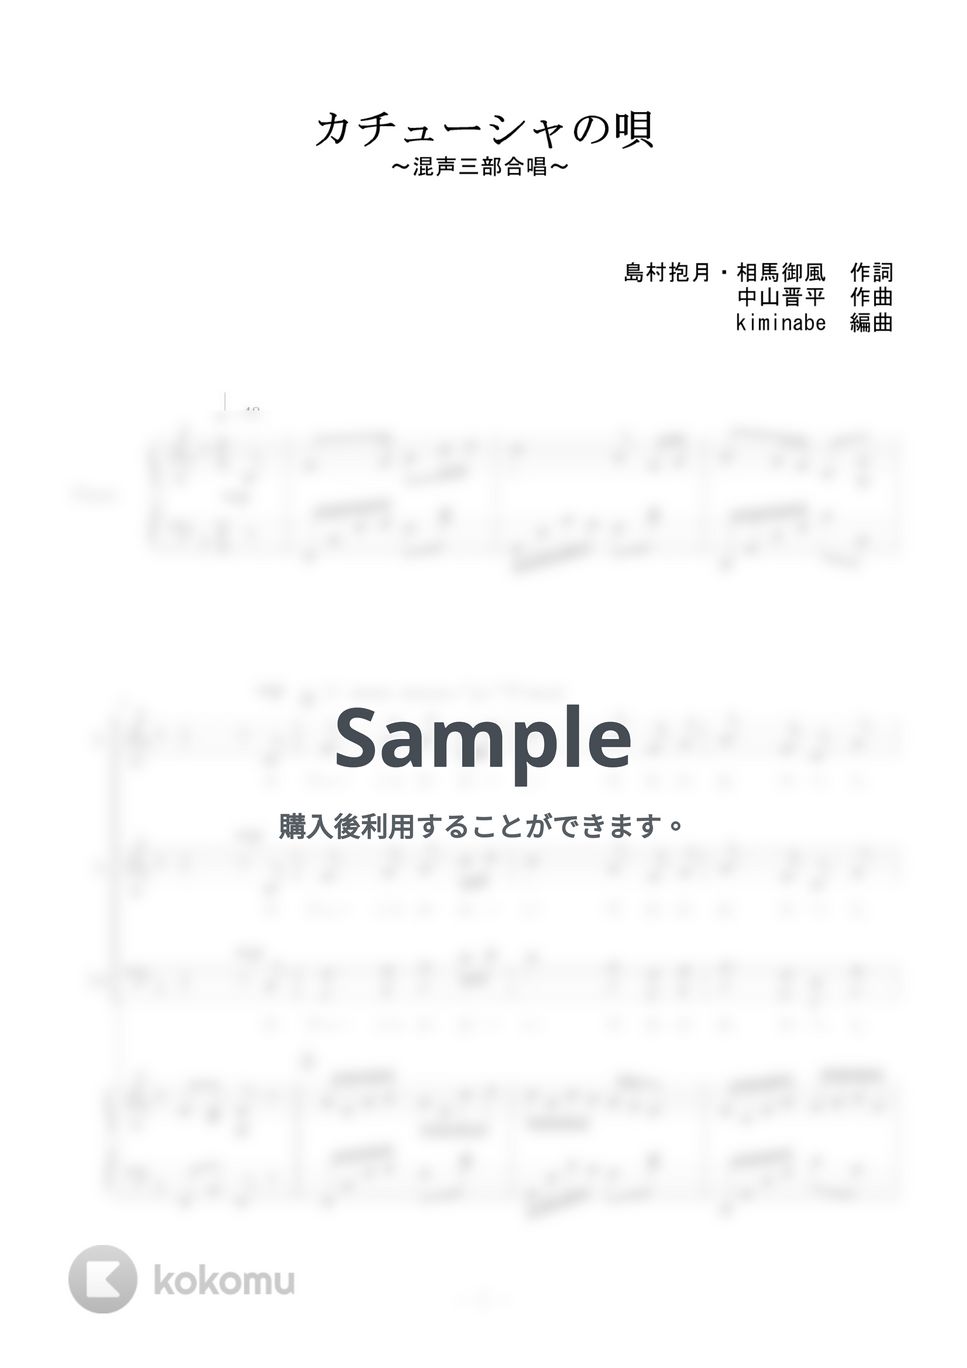 中山晋平 - カチューシャの唄 (混声三部合唱) by kiminabe